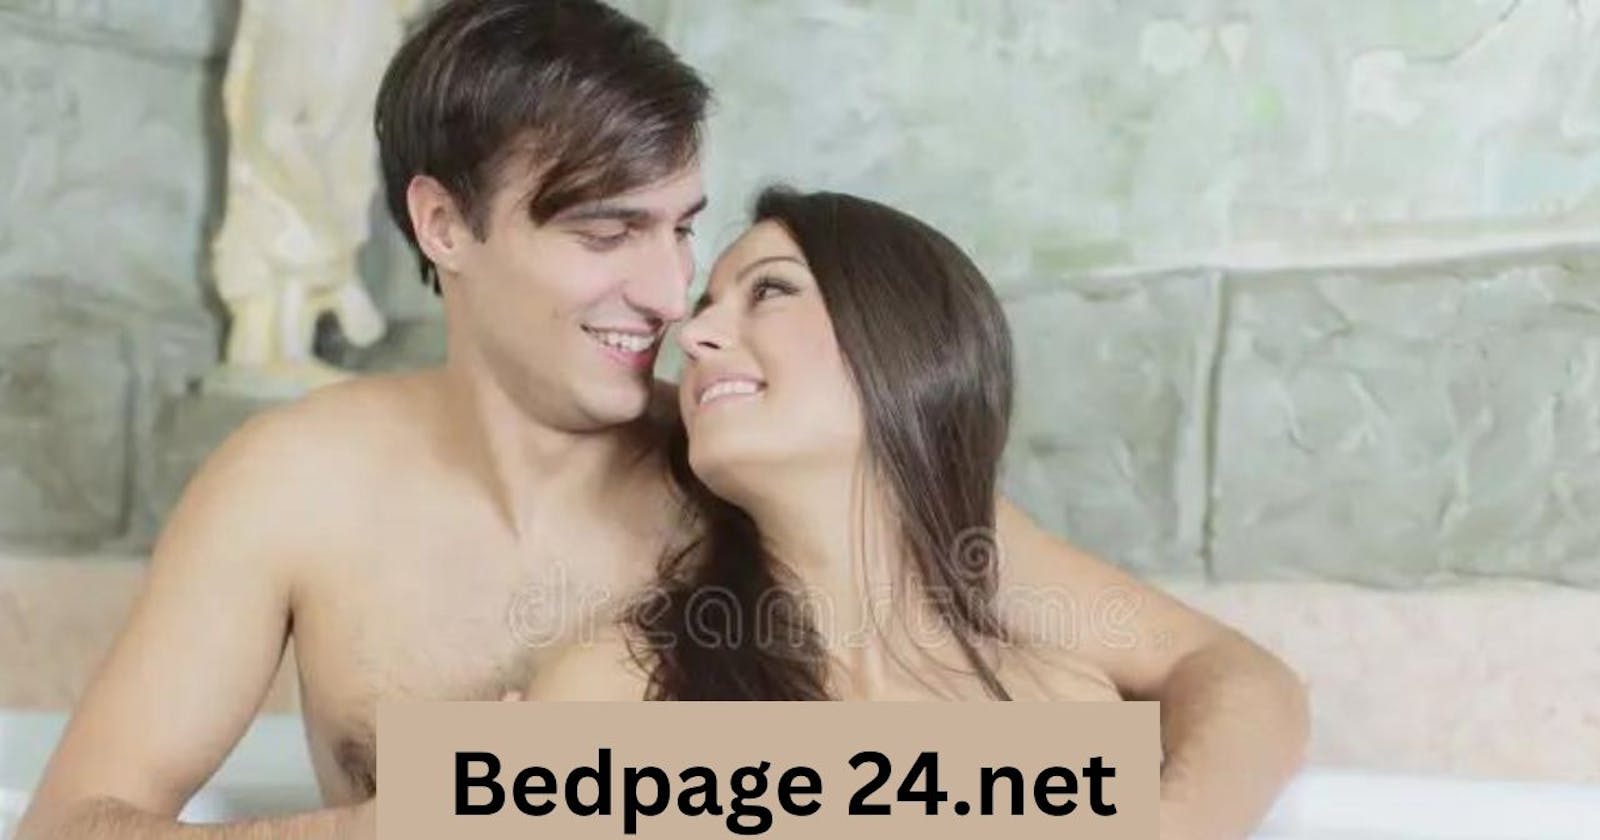 Bedpage Alternative is Bedpage24.net